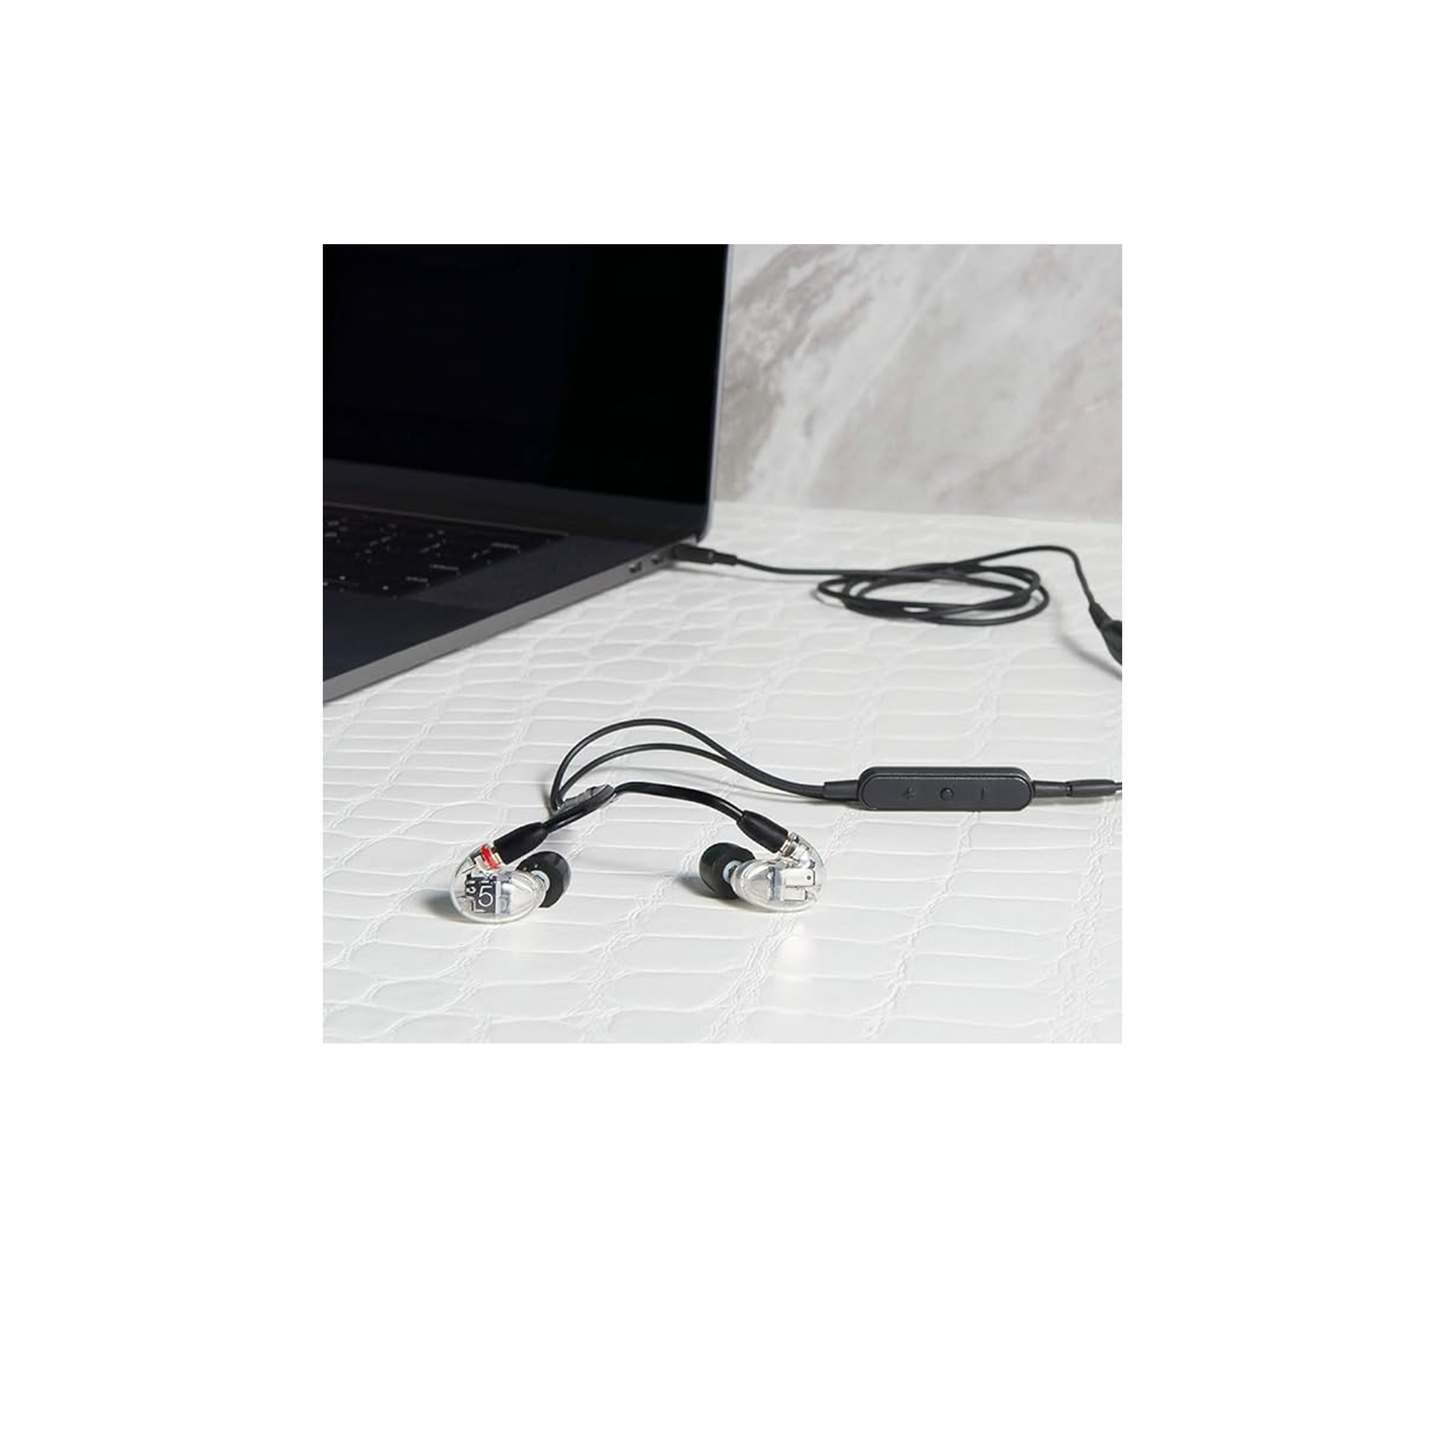 سماعات أذن Shure AONIC 5 السلكية العازلة للصوت، صوت عالي الوضوح + صوت جهير طبيعي، ثلاثة محركات، ملاءمة آمنة داخل الأذن، كابل قابل للفصل، جودة متينة، متوافق مع أجهزة Apple وAndroid - شفاف 